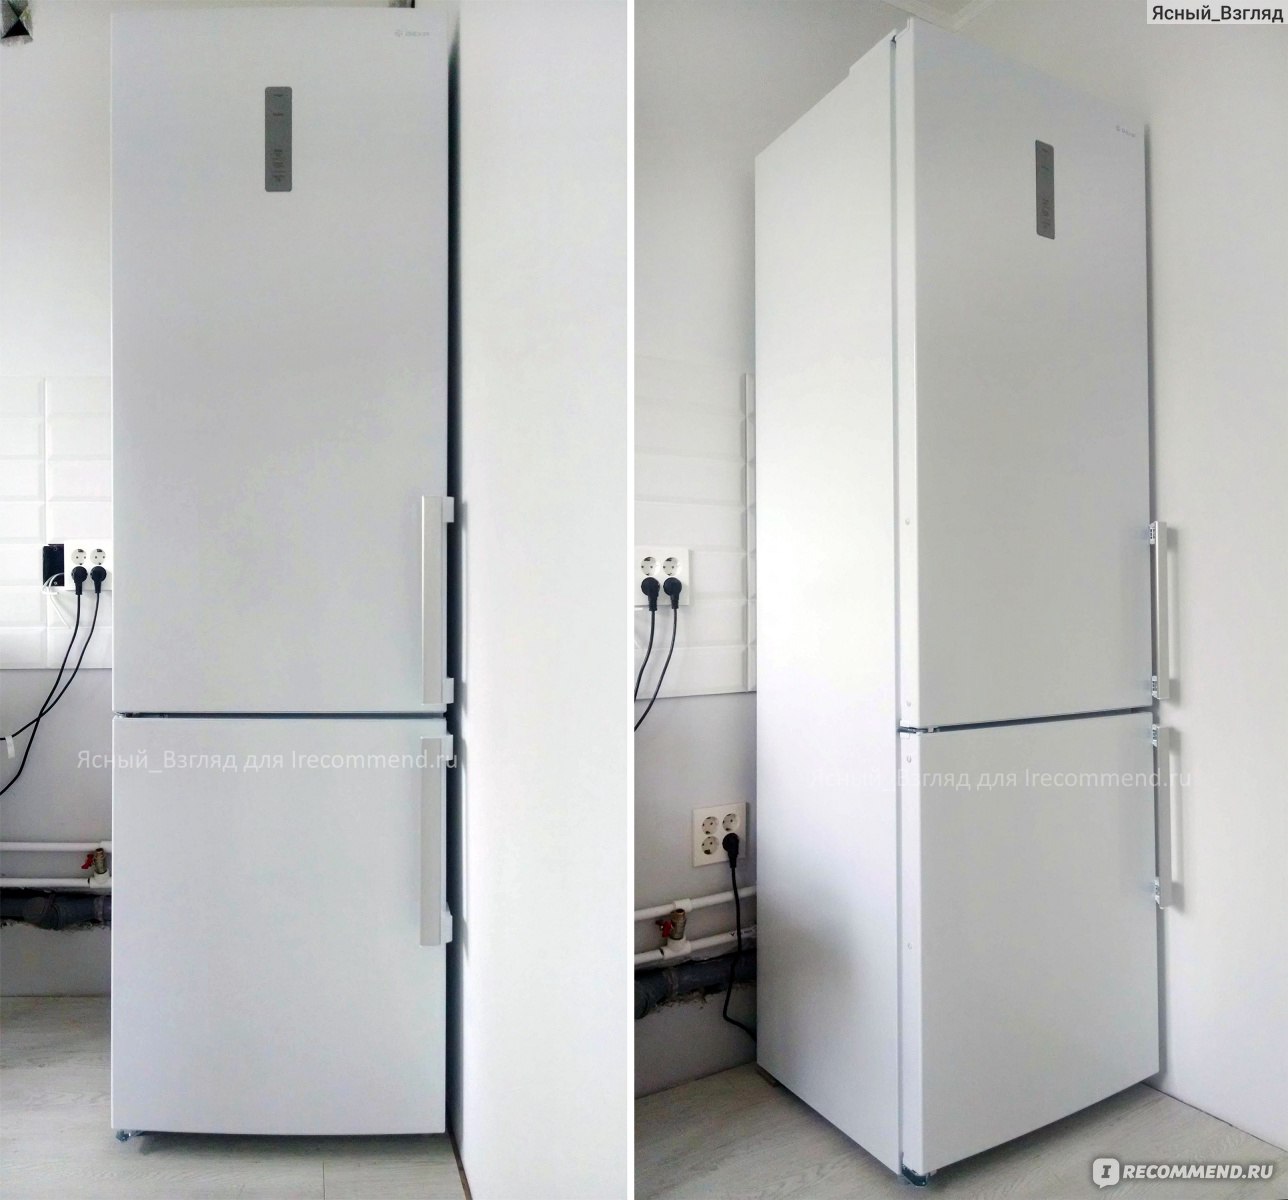 Холодильник с морозильником dexp rf. Холодильник DEXP RF-cn350dmg/s. Холодильник DEXP RF-td160nma/w. Холодильник DEXP RF-cn350dmg/s белый. Холодильник с морозильником DEXP RF-cn350dmg/s белый.